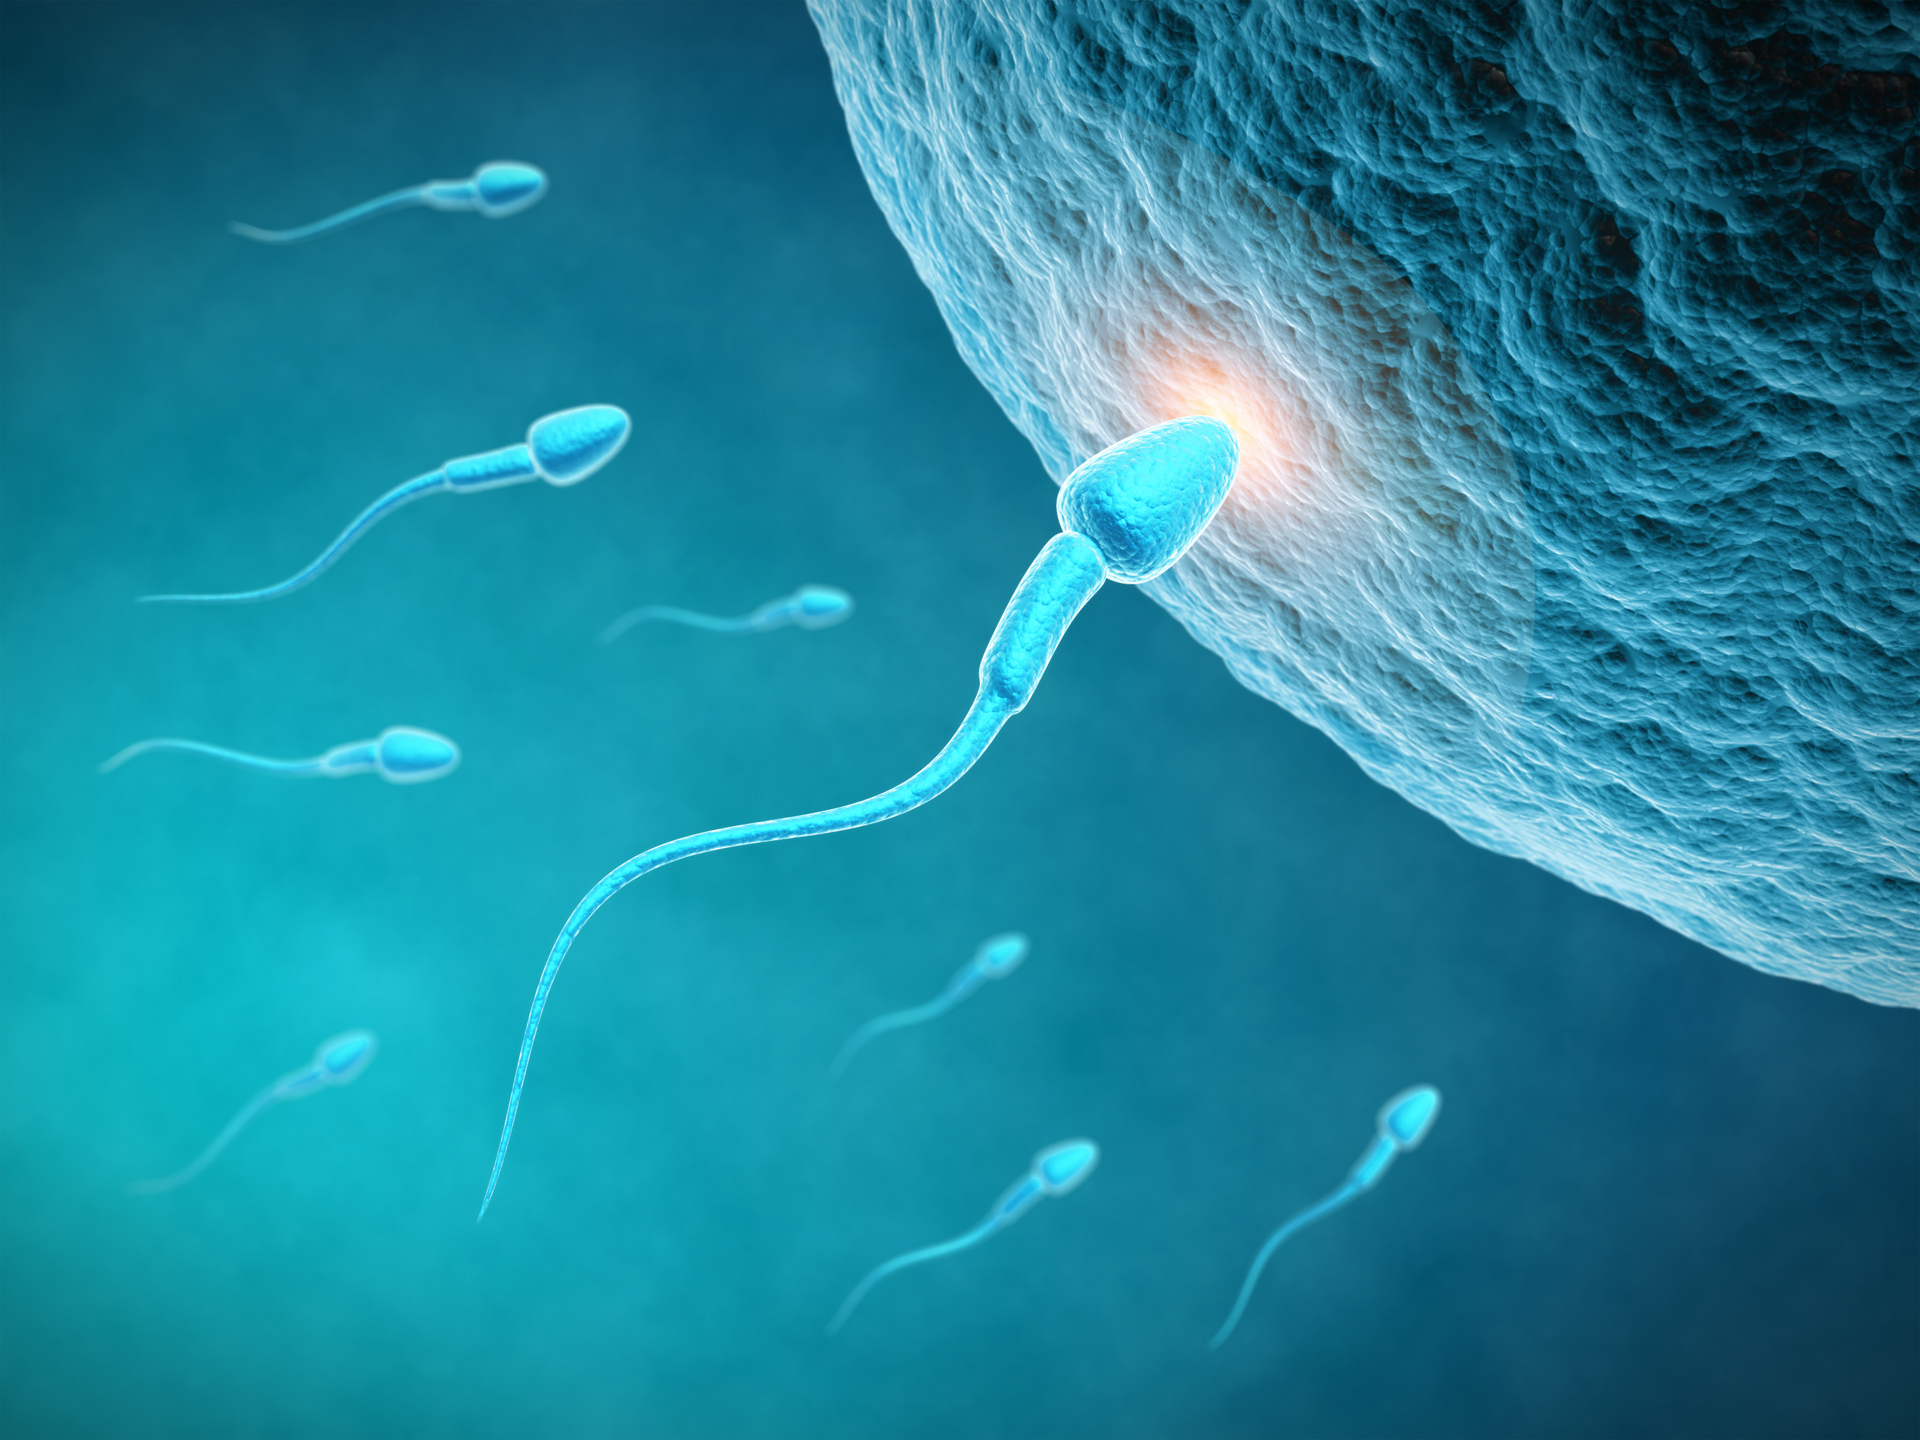 "Detectamos una disminución en el número de espermatozoides", dijo el especialista (Getty Images)